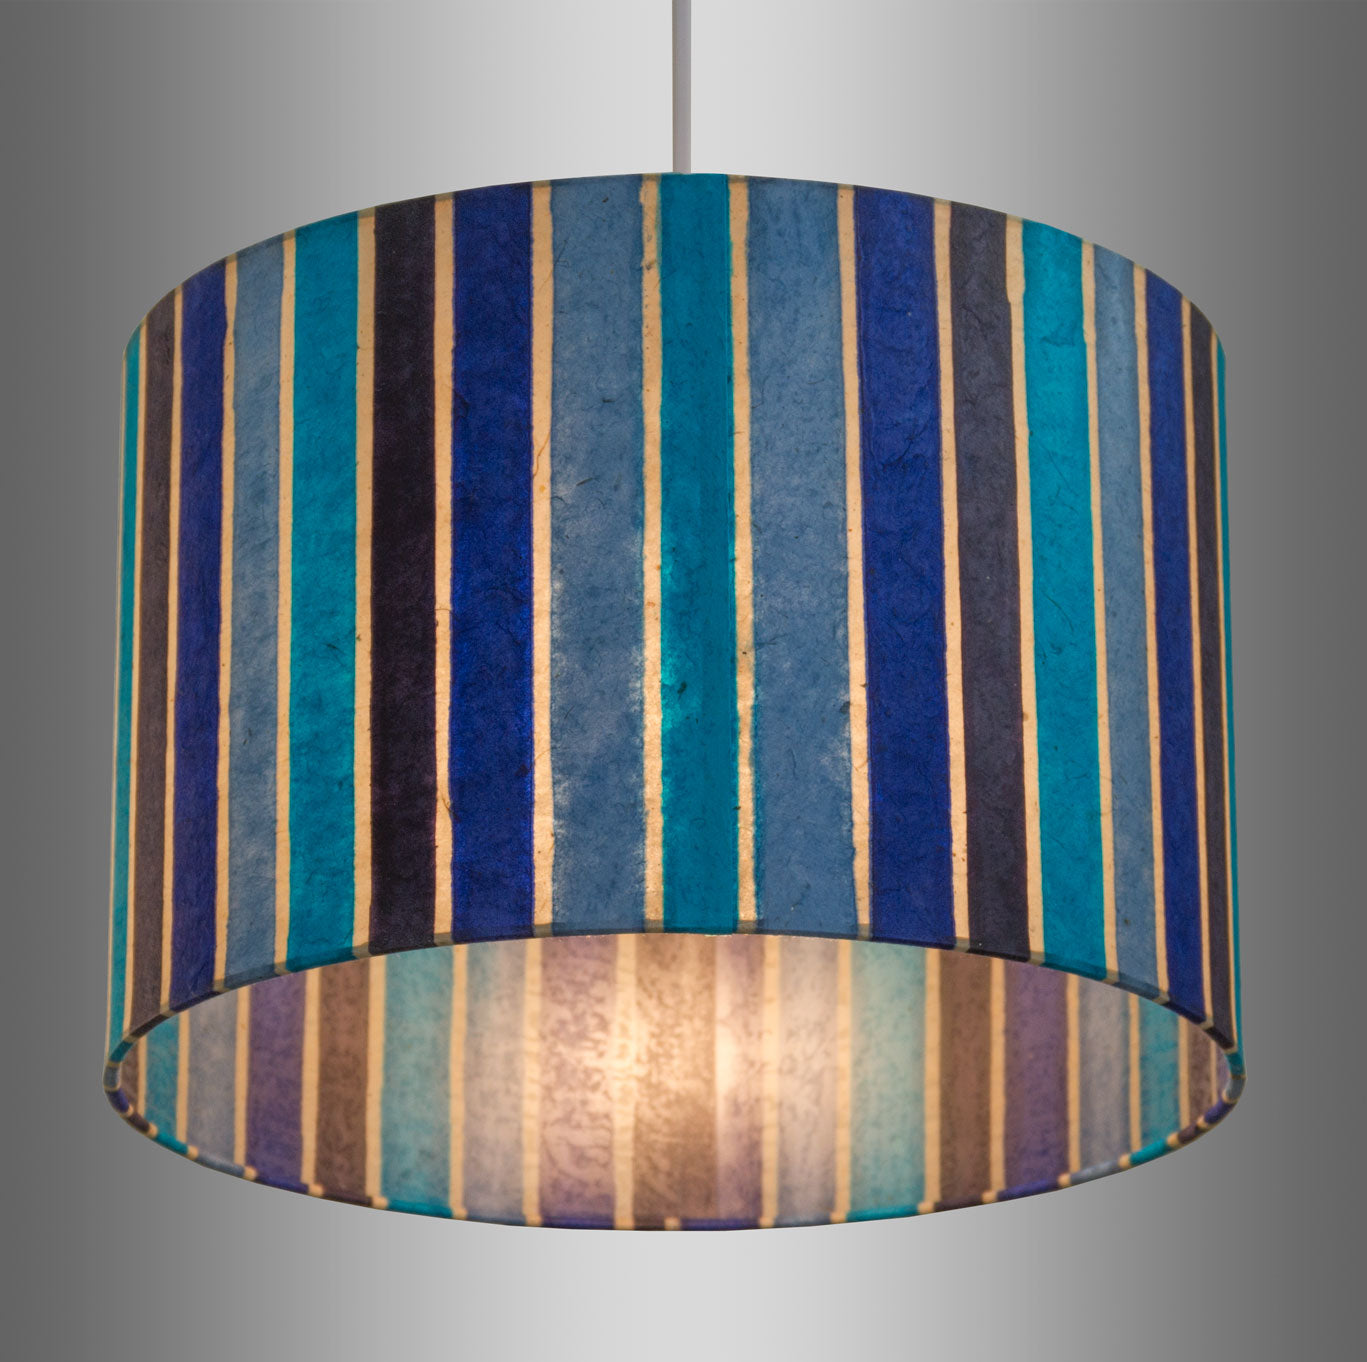 Oval Lamp Shade - P05 - Batik Stripes Blue, 20cm(w) x 20cm(h) x 13cm(d)